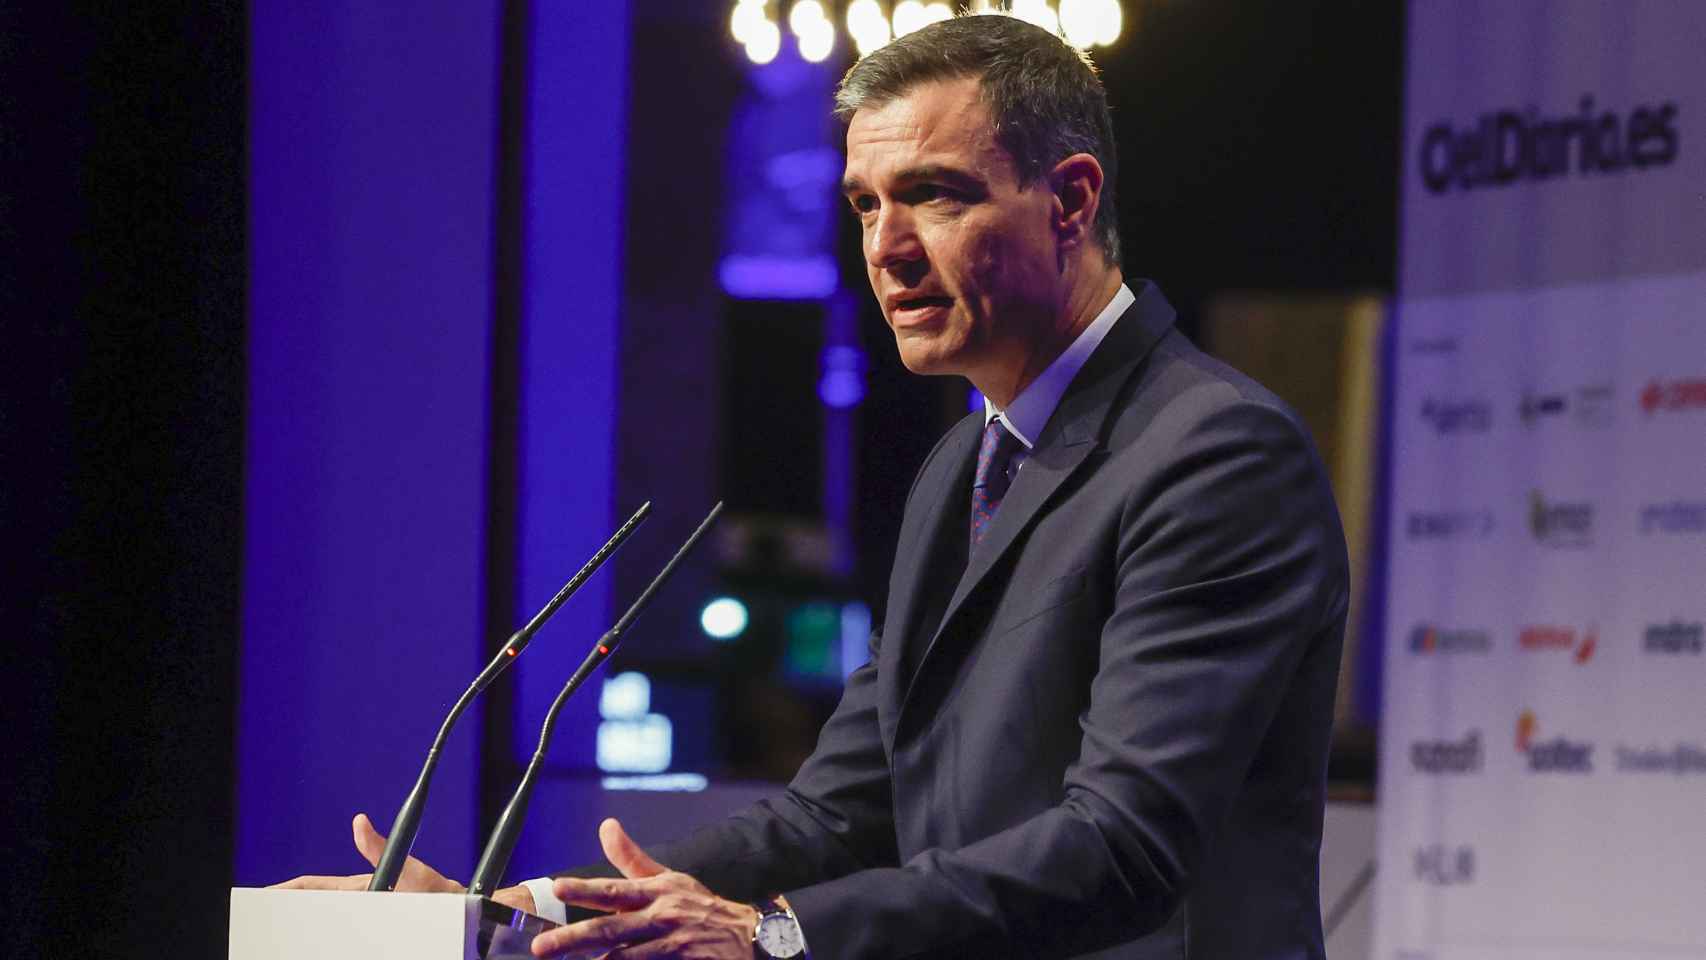 El presidente del Gobierno, Pedro Sánchez, inaugura la III edición del foro Fondos Europeos de elDiario.es,  este lunes en Madrid.